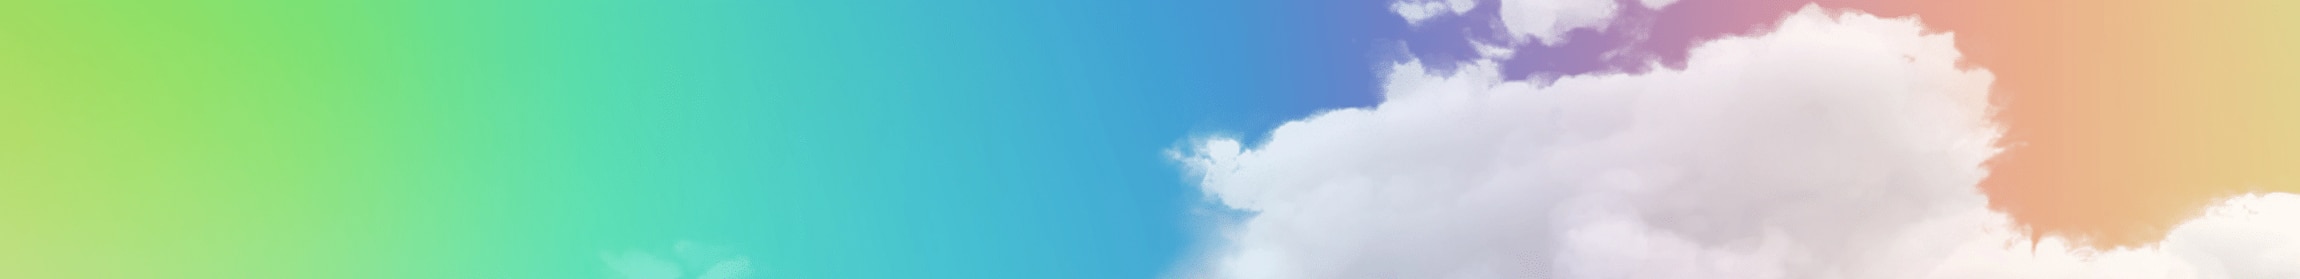 Malibu original background with clouds